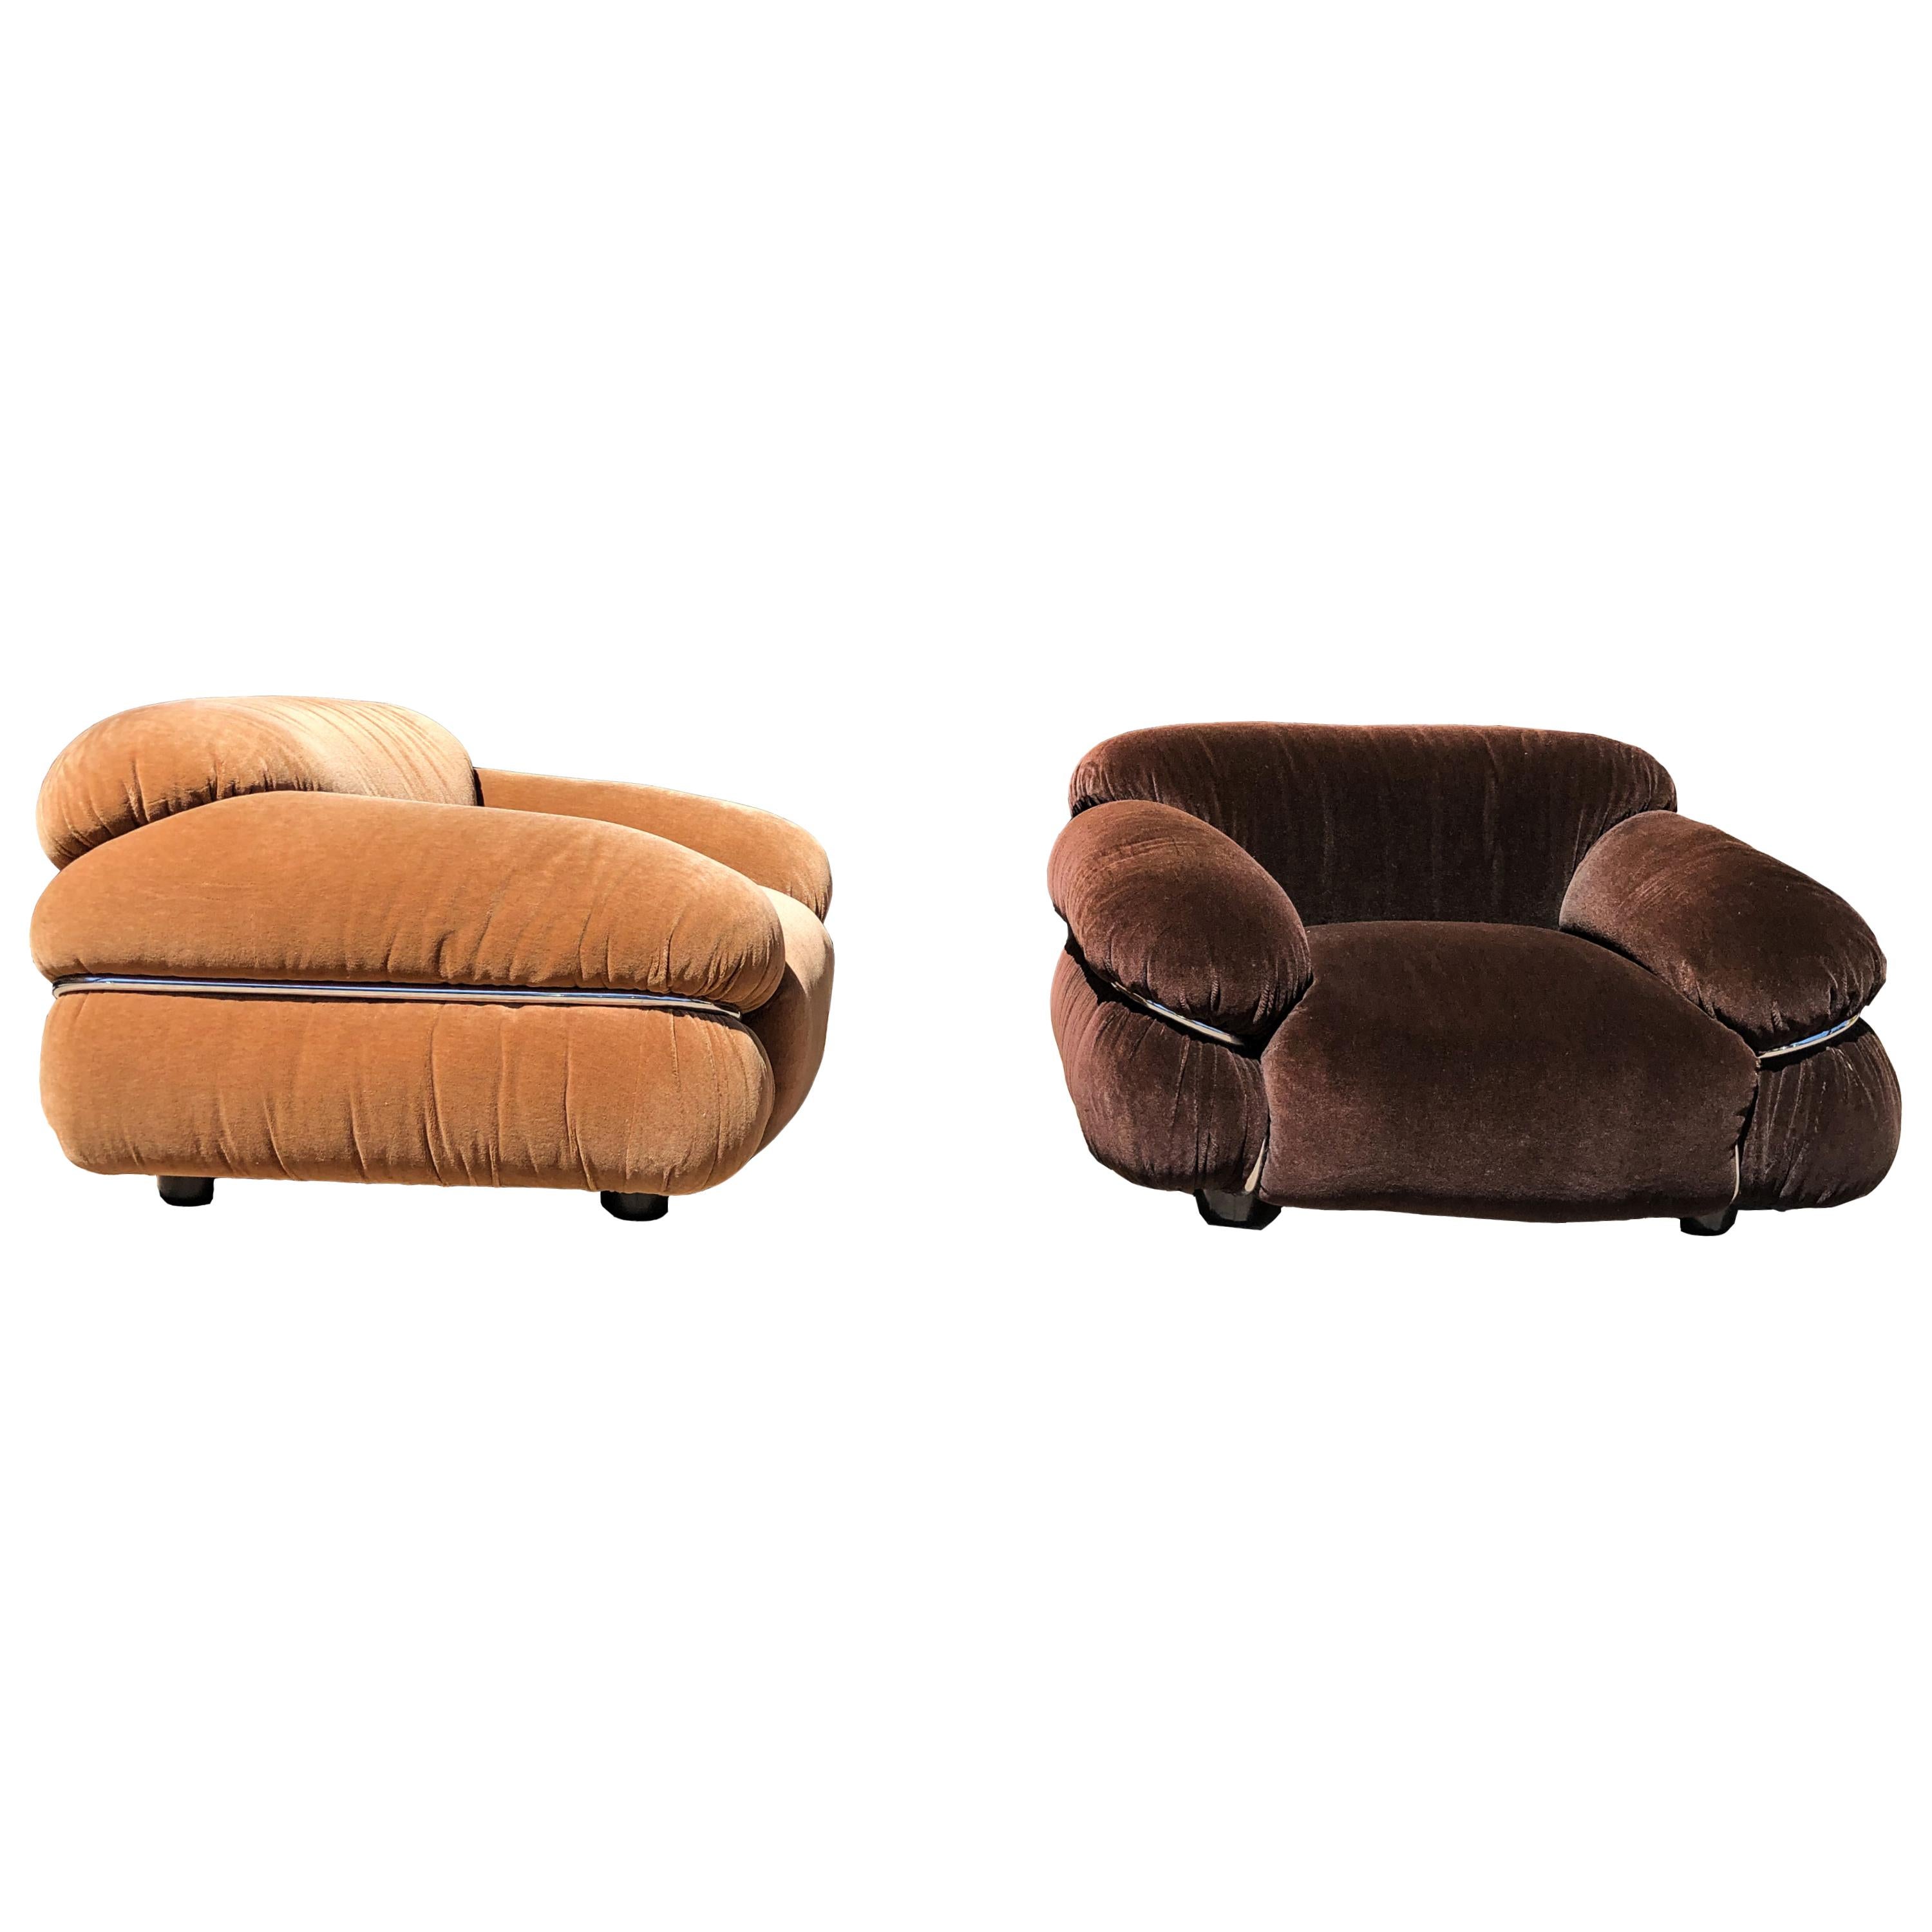 Der Sesann Lounge Chair wurde 1970 von Gianfranco Frattini entworfen und vom italienischen Hersteller Cassina produziert.

Dieses Set besteht aus zwei Lounge-Sesseln, die mit tabak- und schokoladenbraunem Alpaka-Samt bezogen sind.

Sesann